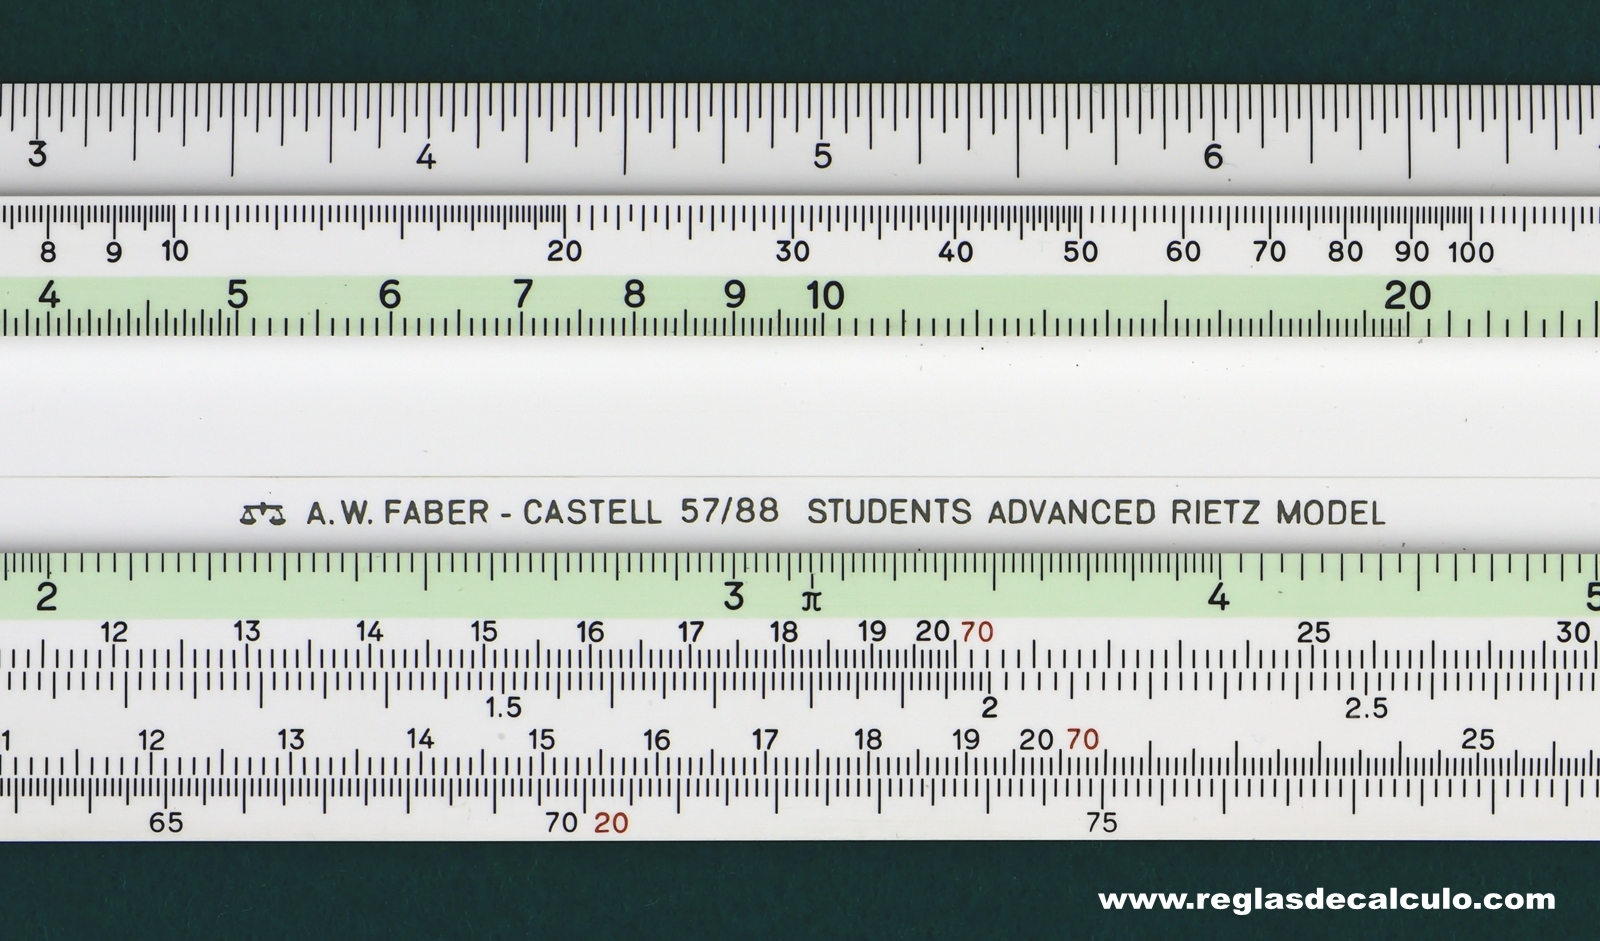 Regla de Calculo Slide rule Faber Castell 57/88